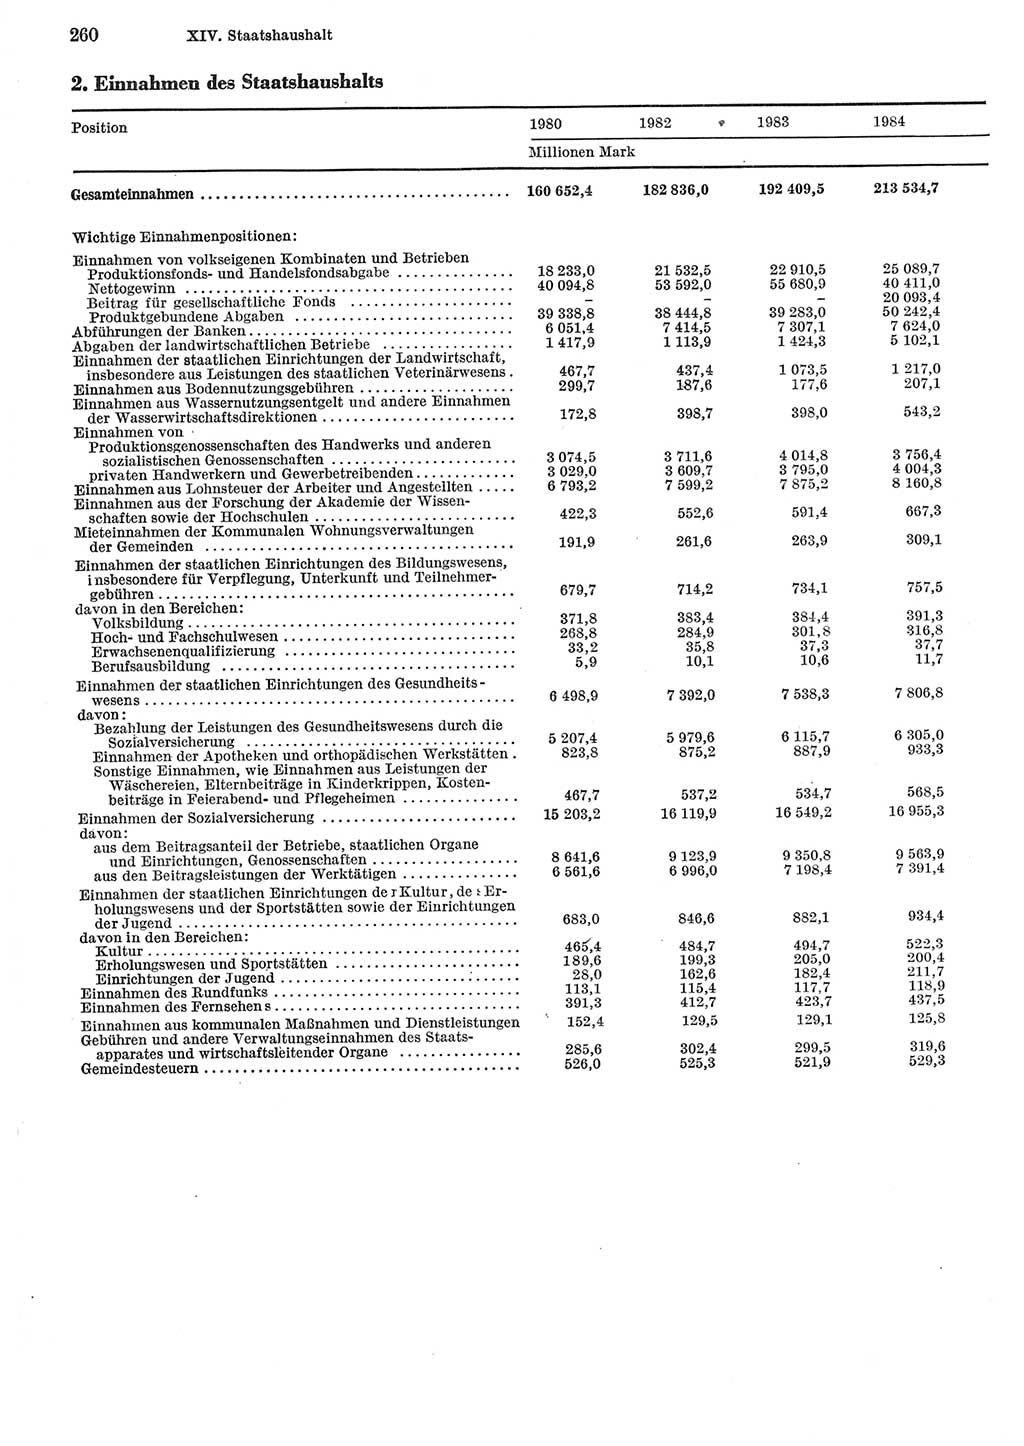 Statistisches Jahrbuch der Deutschen Demokratischen Republik (DDR) 1985, Seite 260 (Stat. Jb. DDR 1985, S. 260)